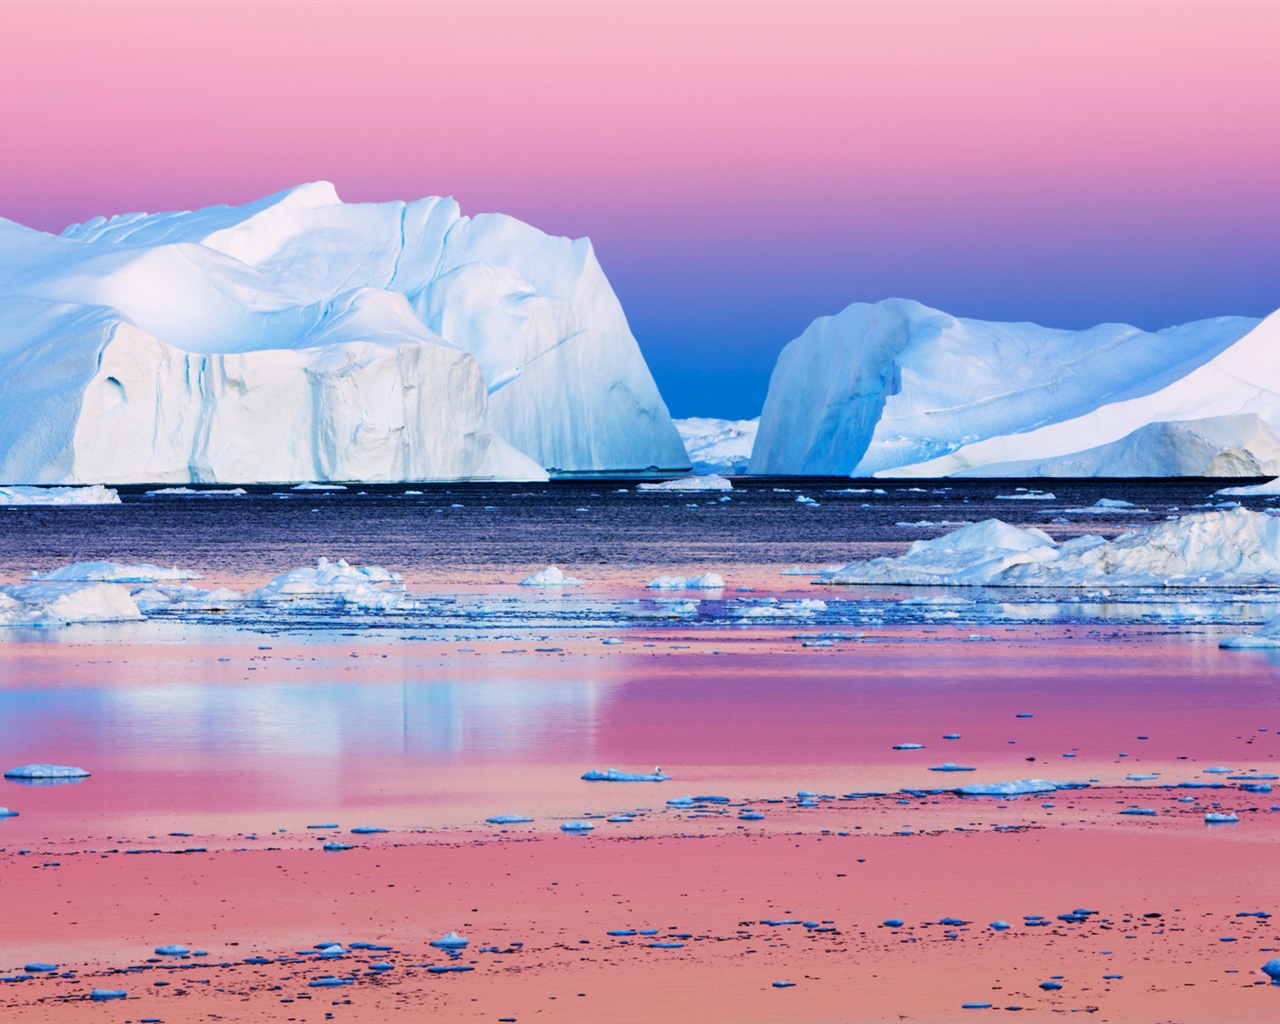 Windows 8: Fondos del Ártico, el paisaje ecológico, ártico animales #7 - 1280x1024